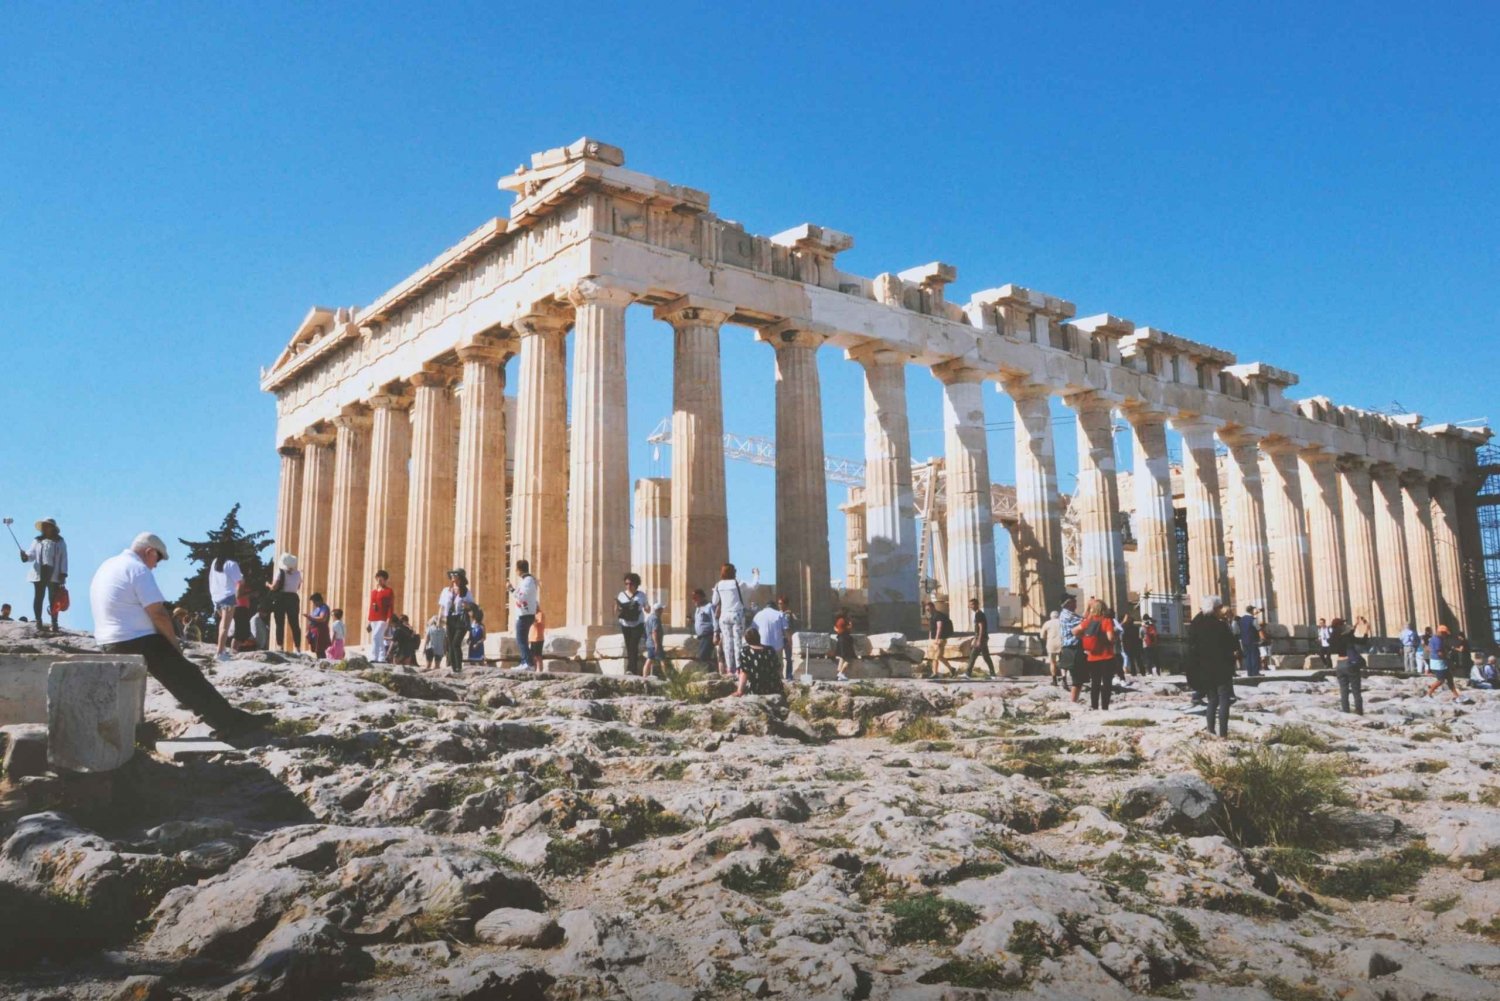 Acropolis , Parthenon and Plaka, Monastiraki walking tour